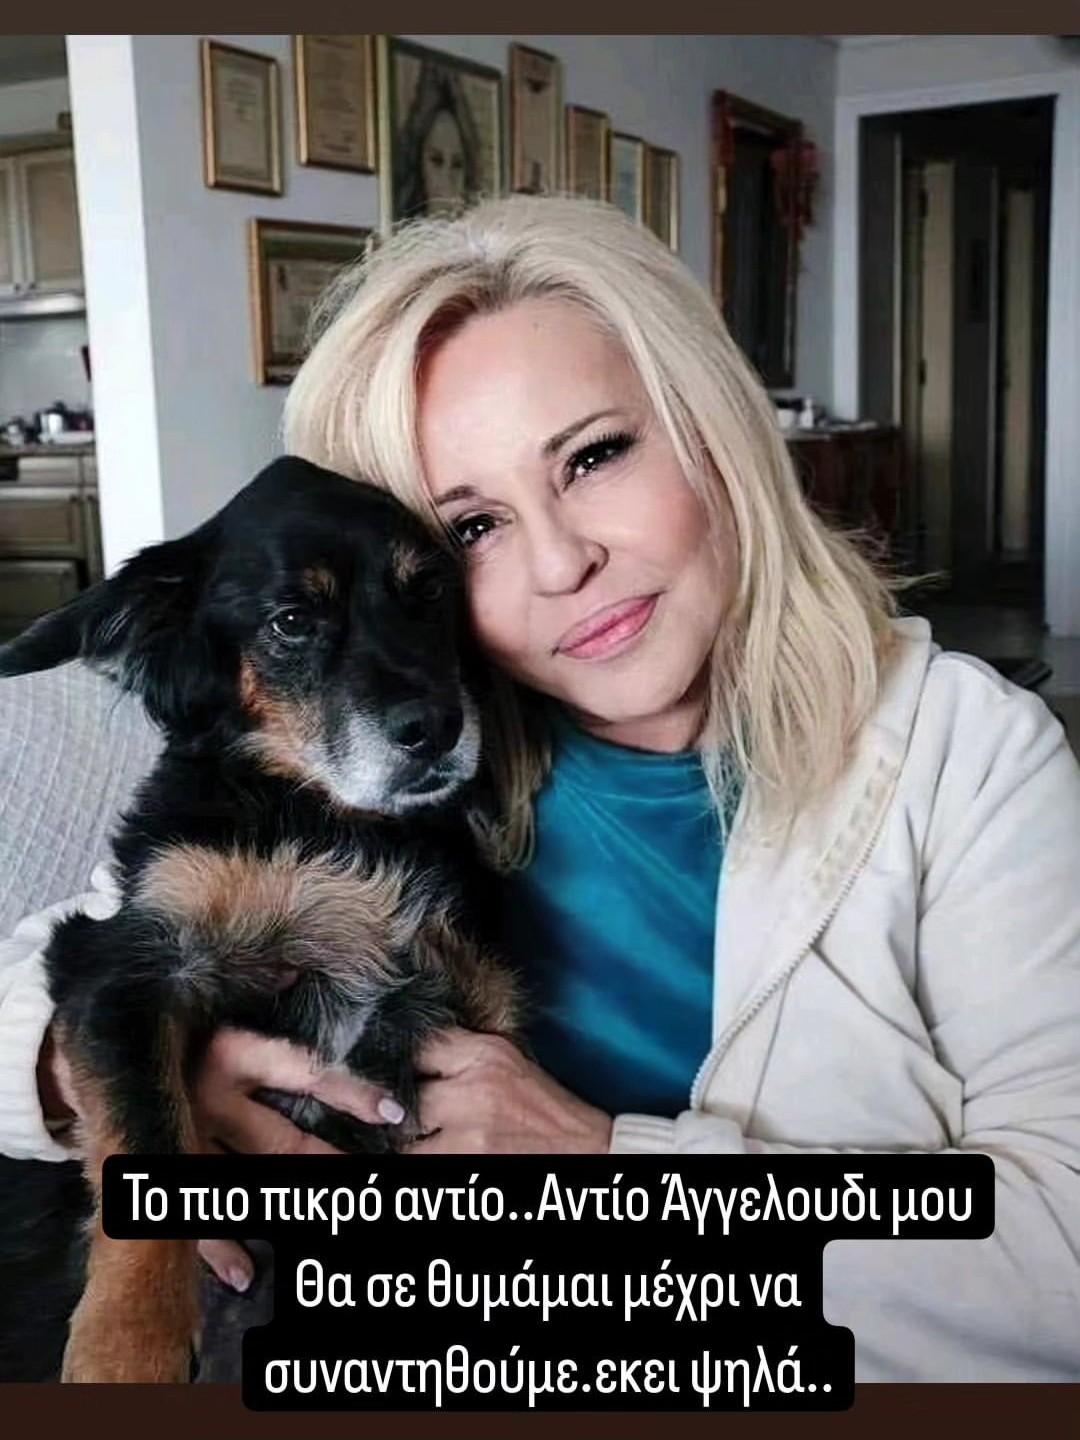 Η Μπέσσυ Αργυράκη με τον σκύλο της που έχασε